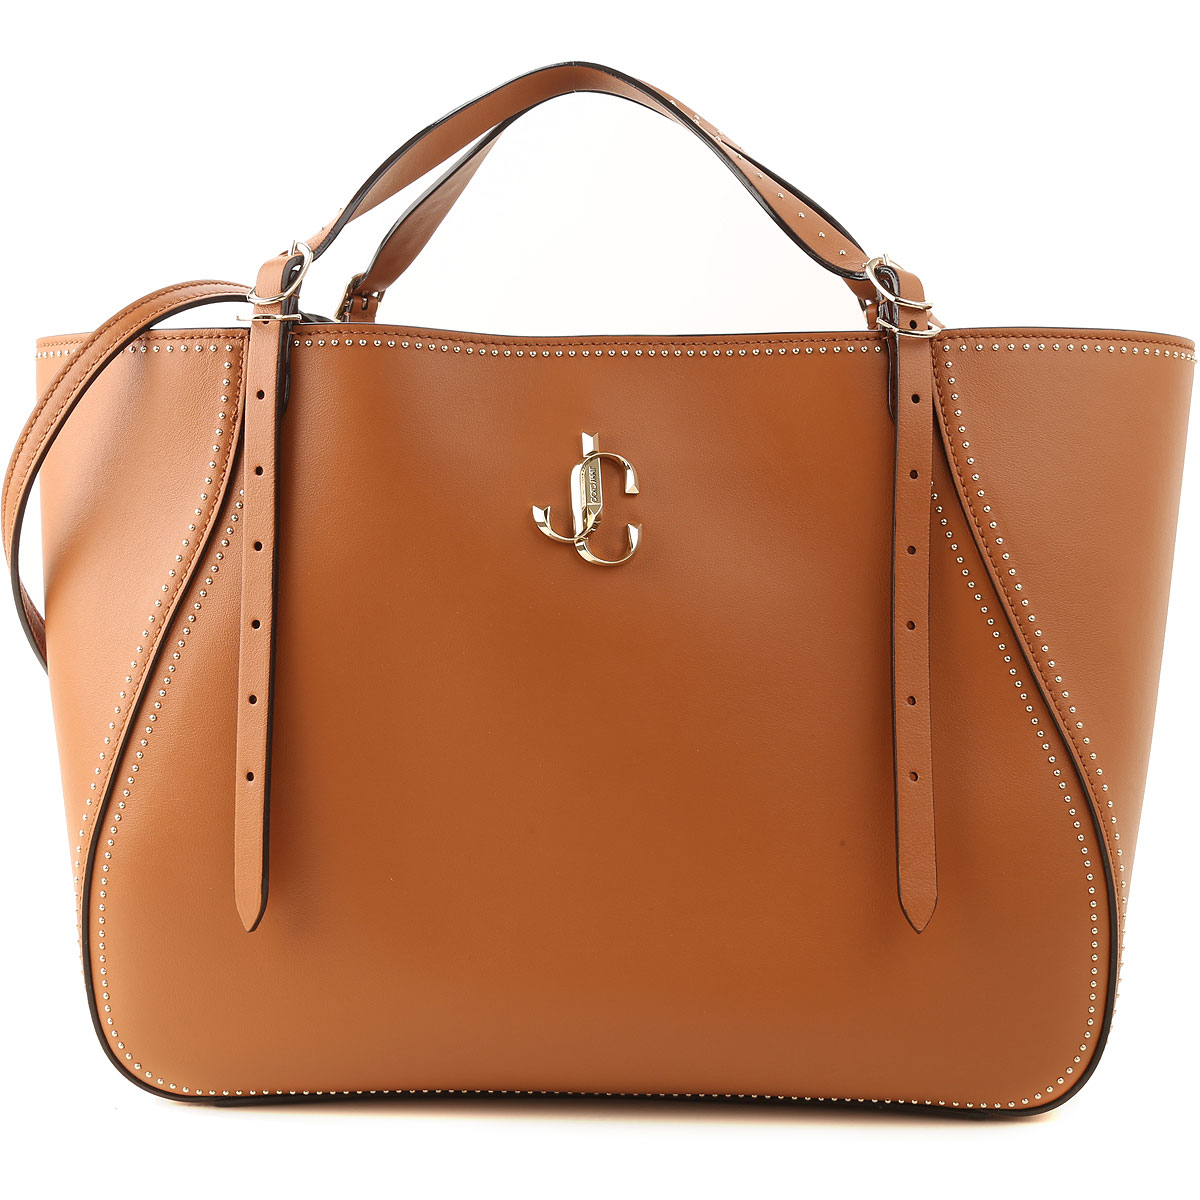 Handbags Jimmy Choo, Style code: varenne-tote-cxn